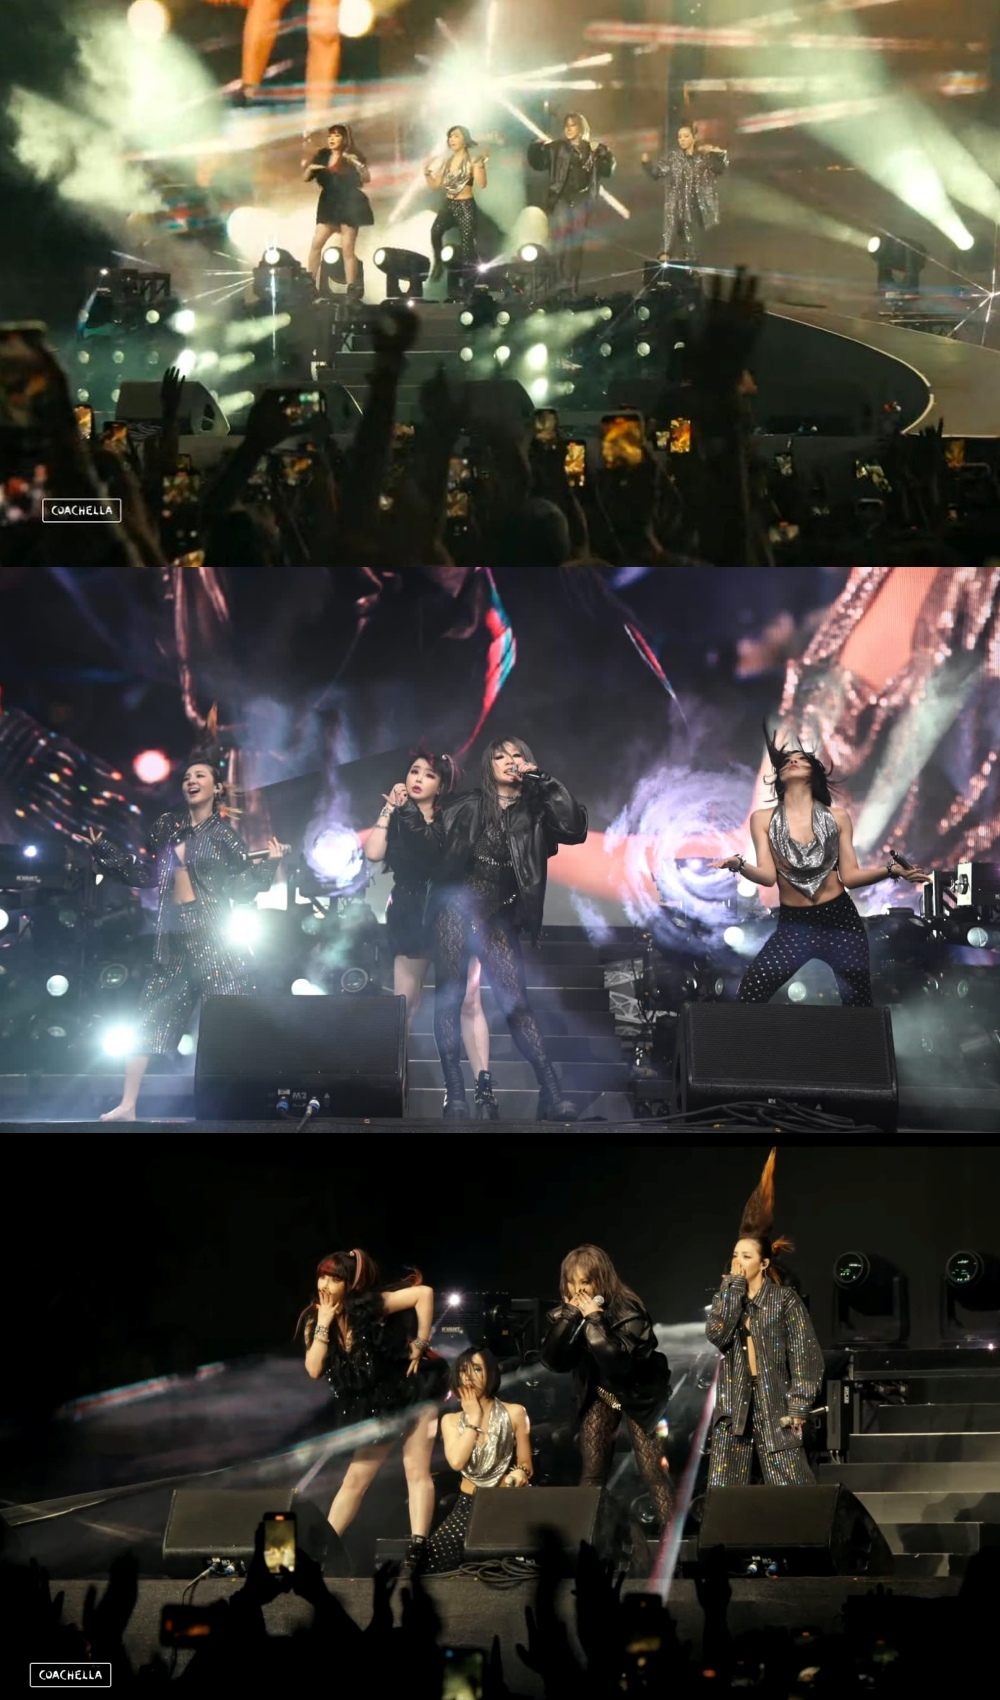  Hiệu ứng sân khấu không quá nhiều, nhưng đủ sôi động và đậm chất 2NE1 và I Am The Best. (Ảnh: Coachella)